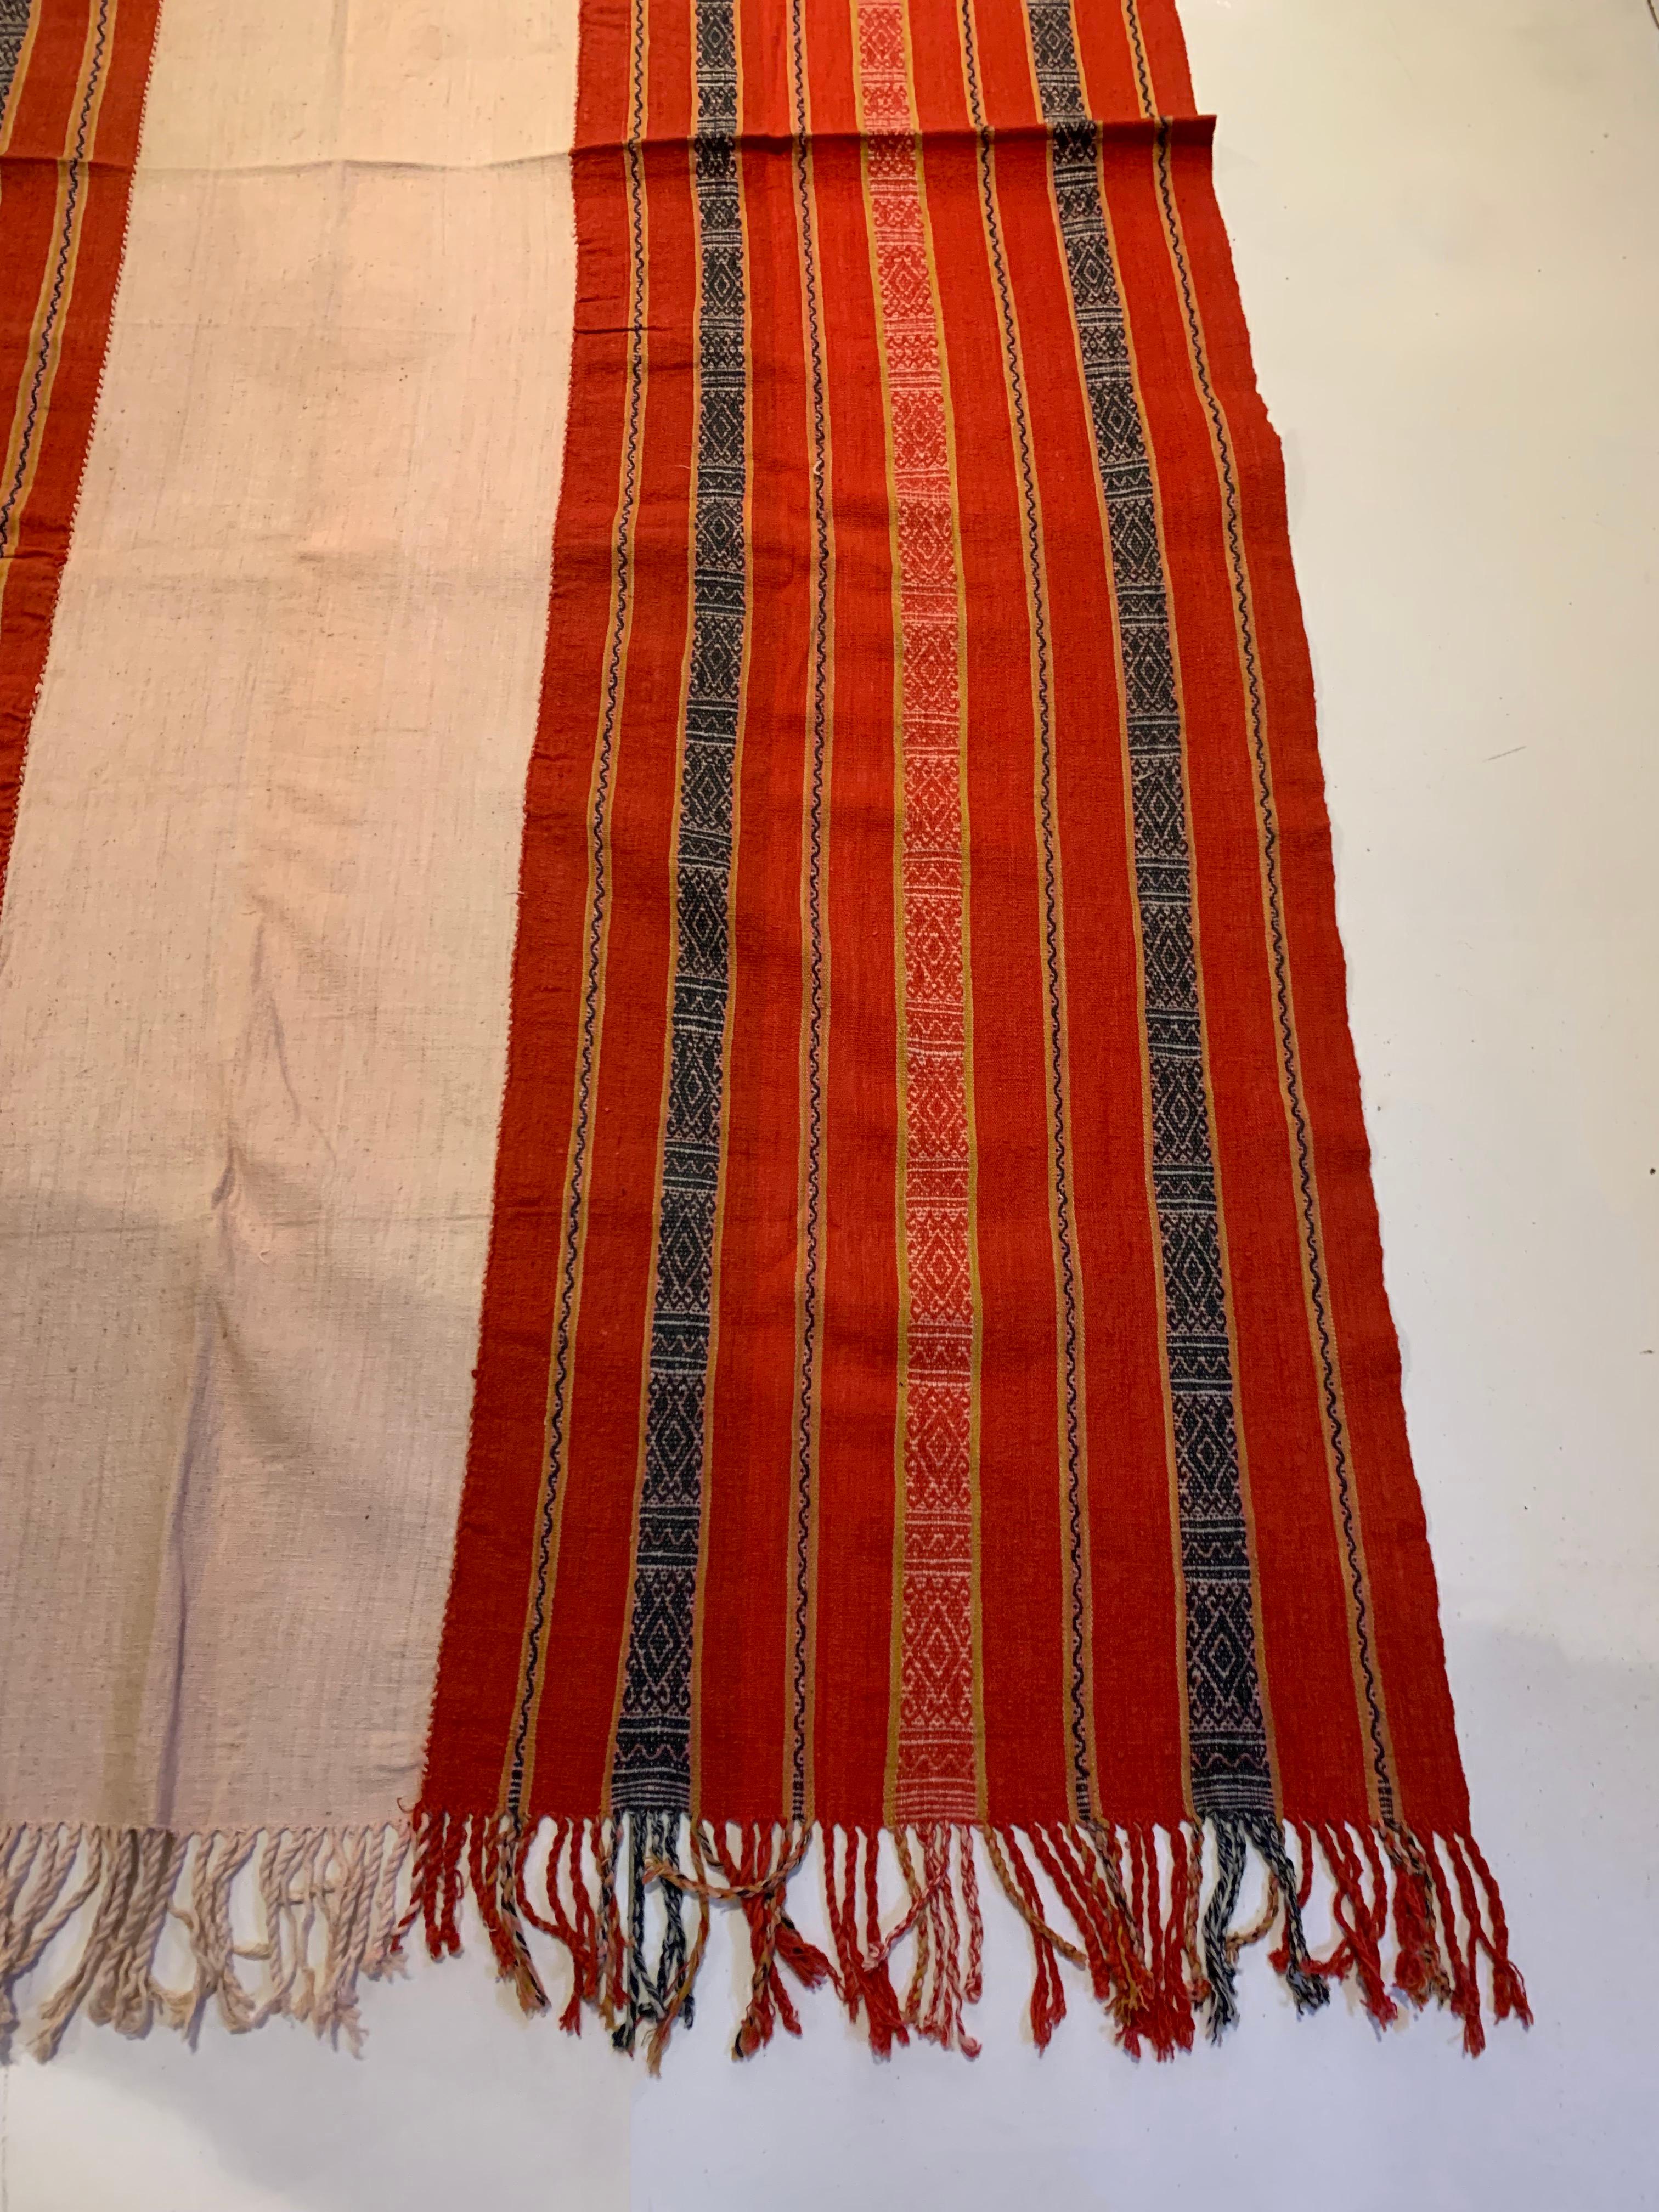 Ikat-Textil von Timor mit atemberaubenden Stammesmotiven und Farben, Indonesien, ca. 1950 (Mitte des 20. Jahrhunderts) im Angebot